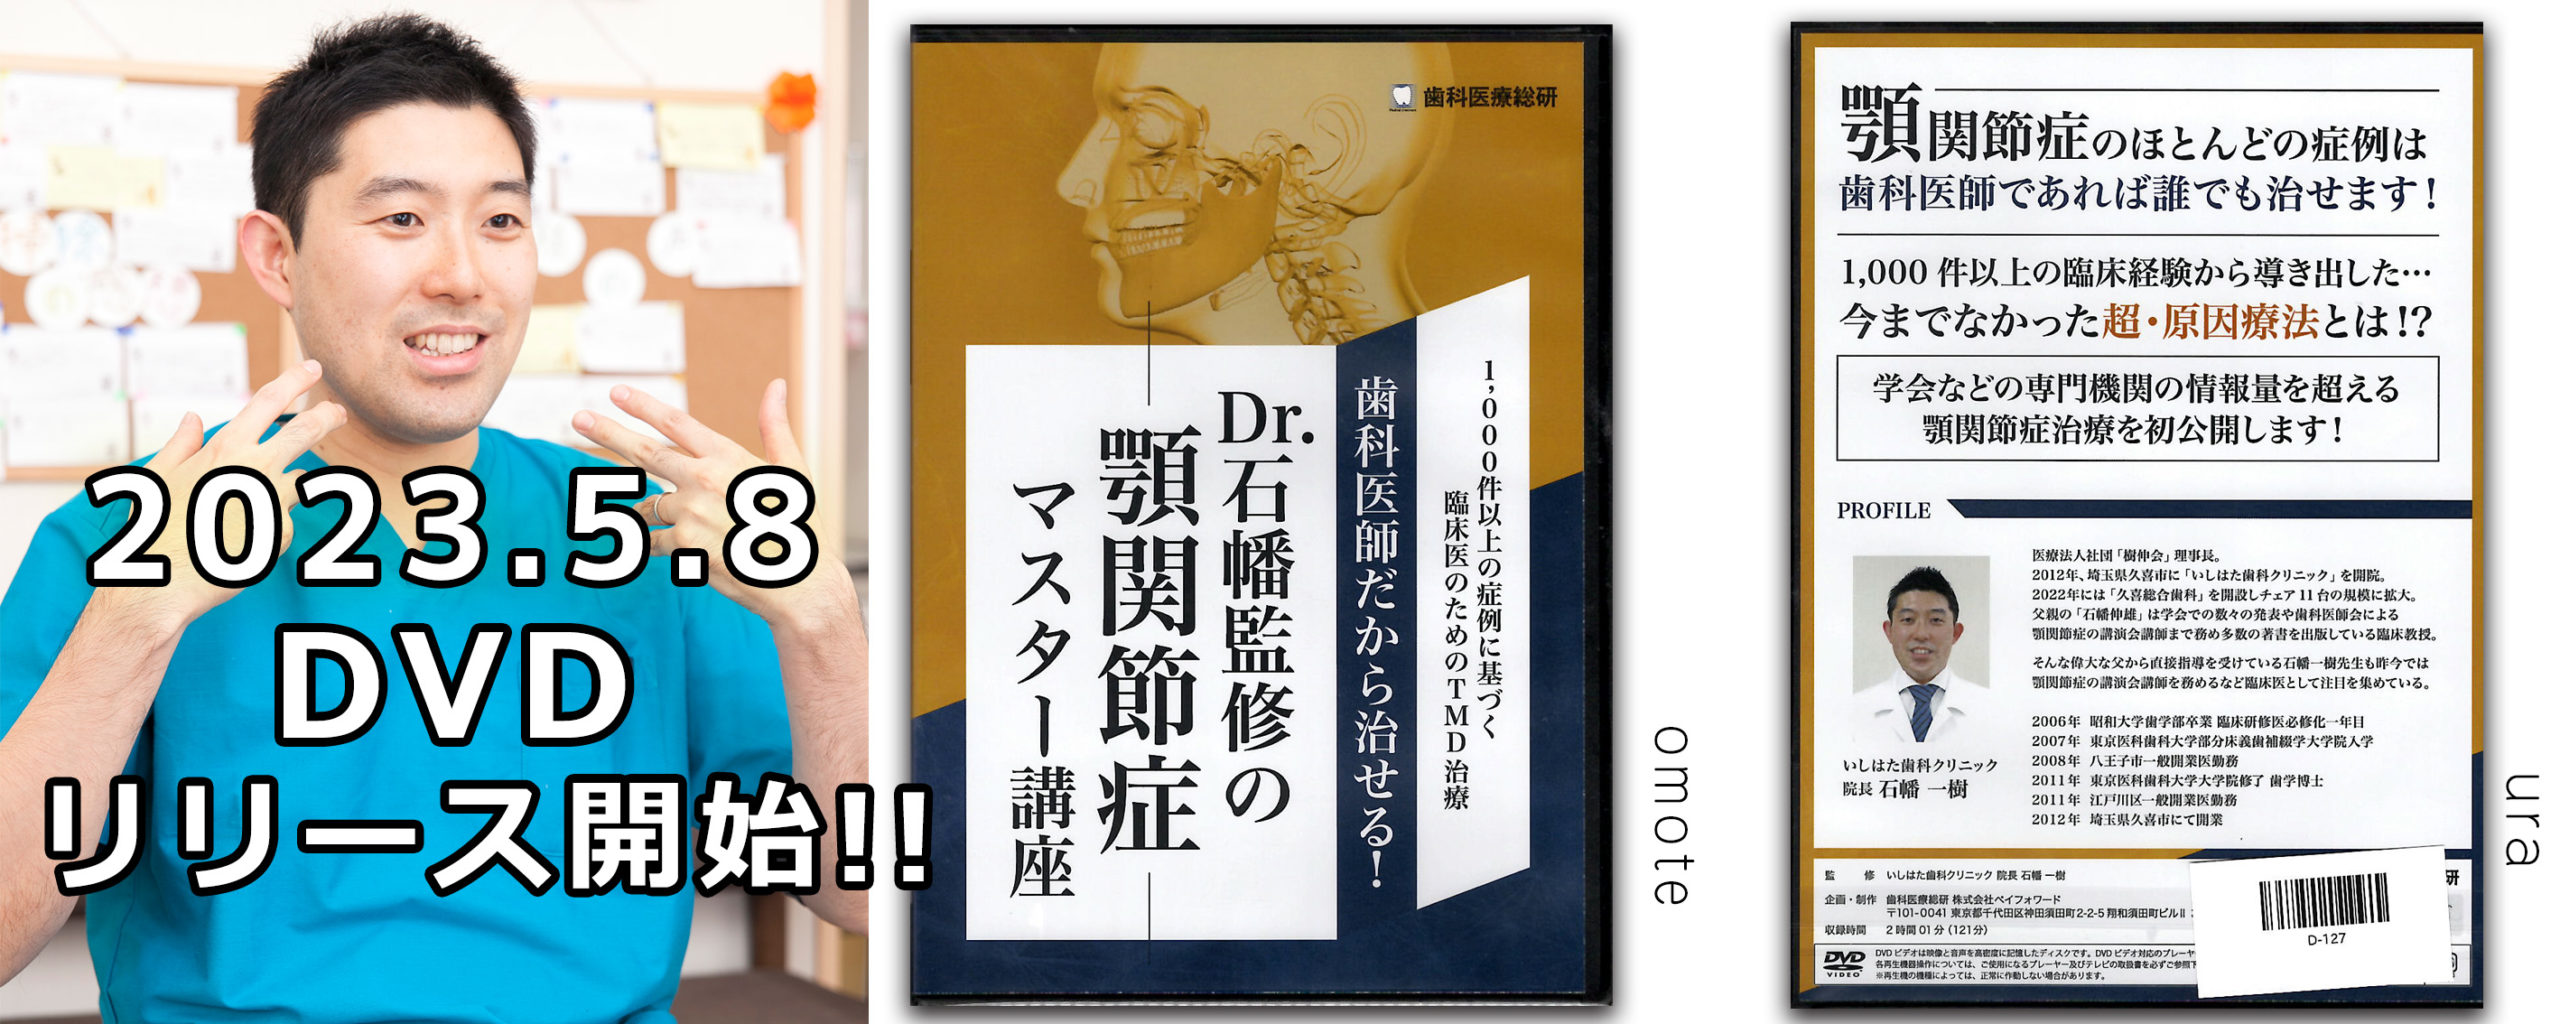 石幡先生監修の顎関節症のマスター講座DVDが2023年5月8日よりリリース開始